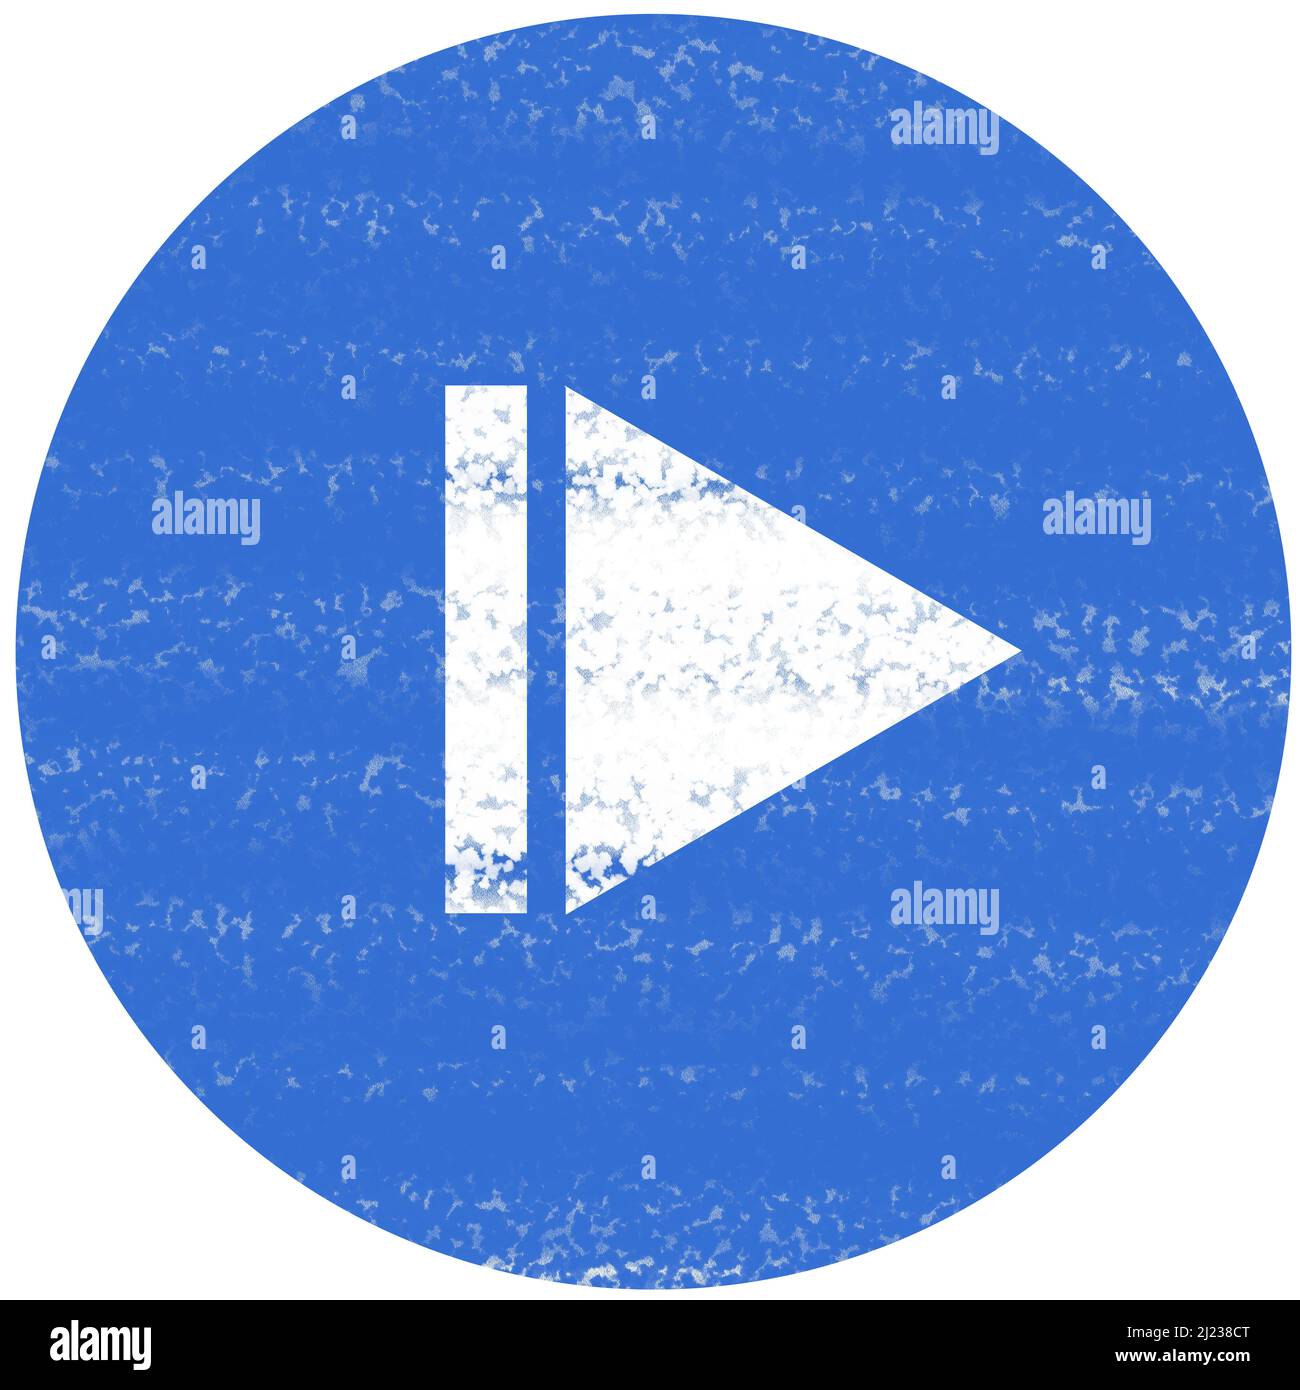 Immagine di un triangolo bianco all'interno di un cerchio blu che rappresenta un pulsante di riproduzione dalla posizione corrente di un lettore multimediale. Il colore tracciante imita Foto Stock